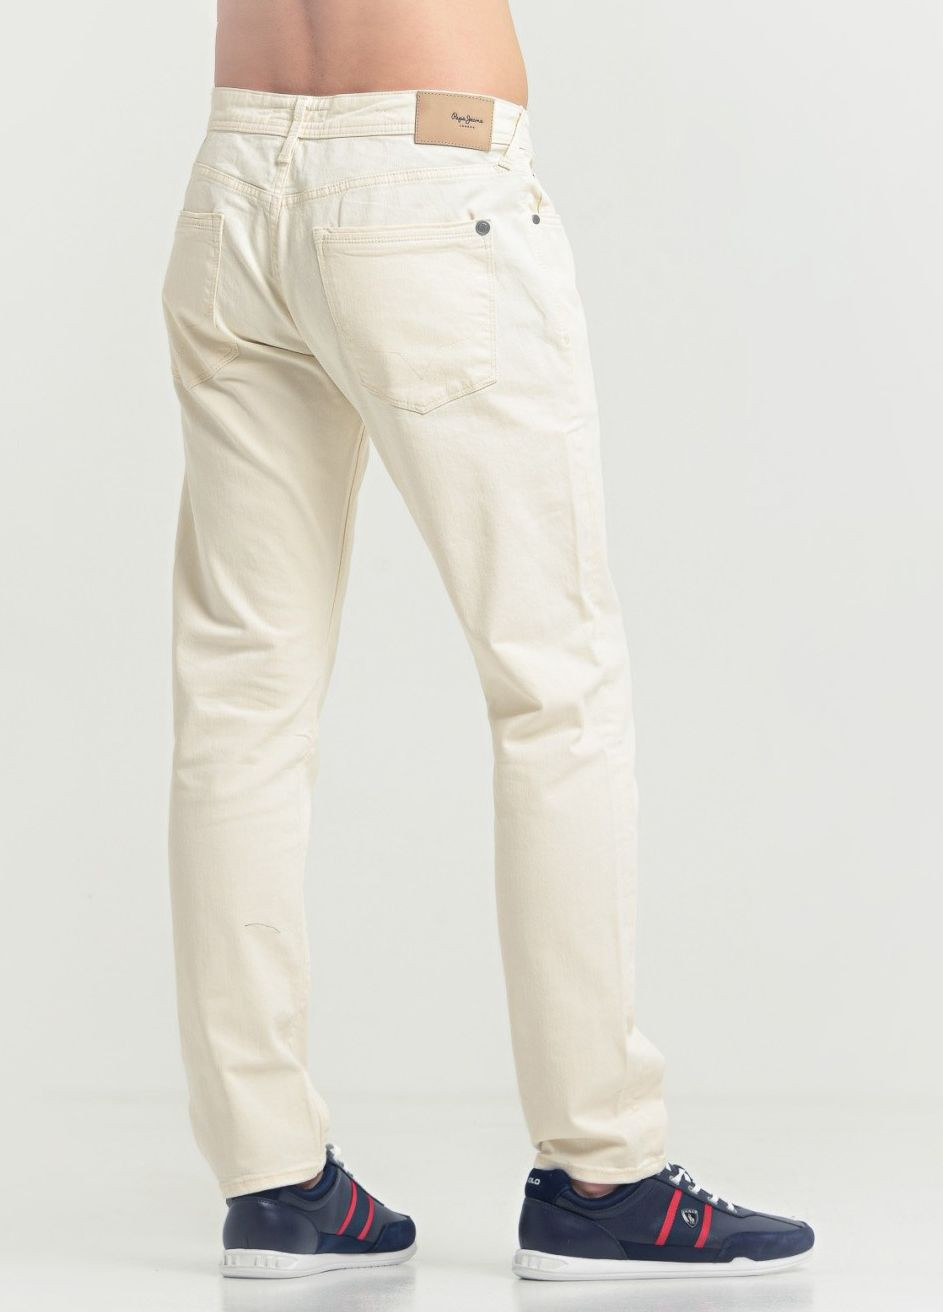 Молочные джинсы Pepe Jeans